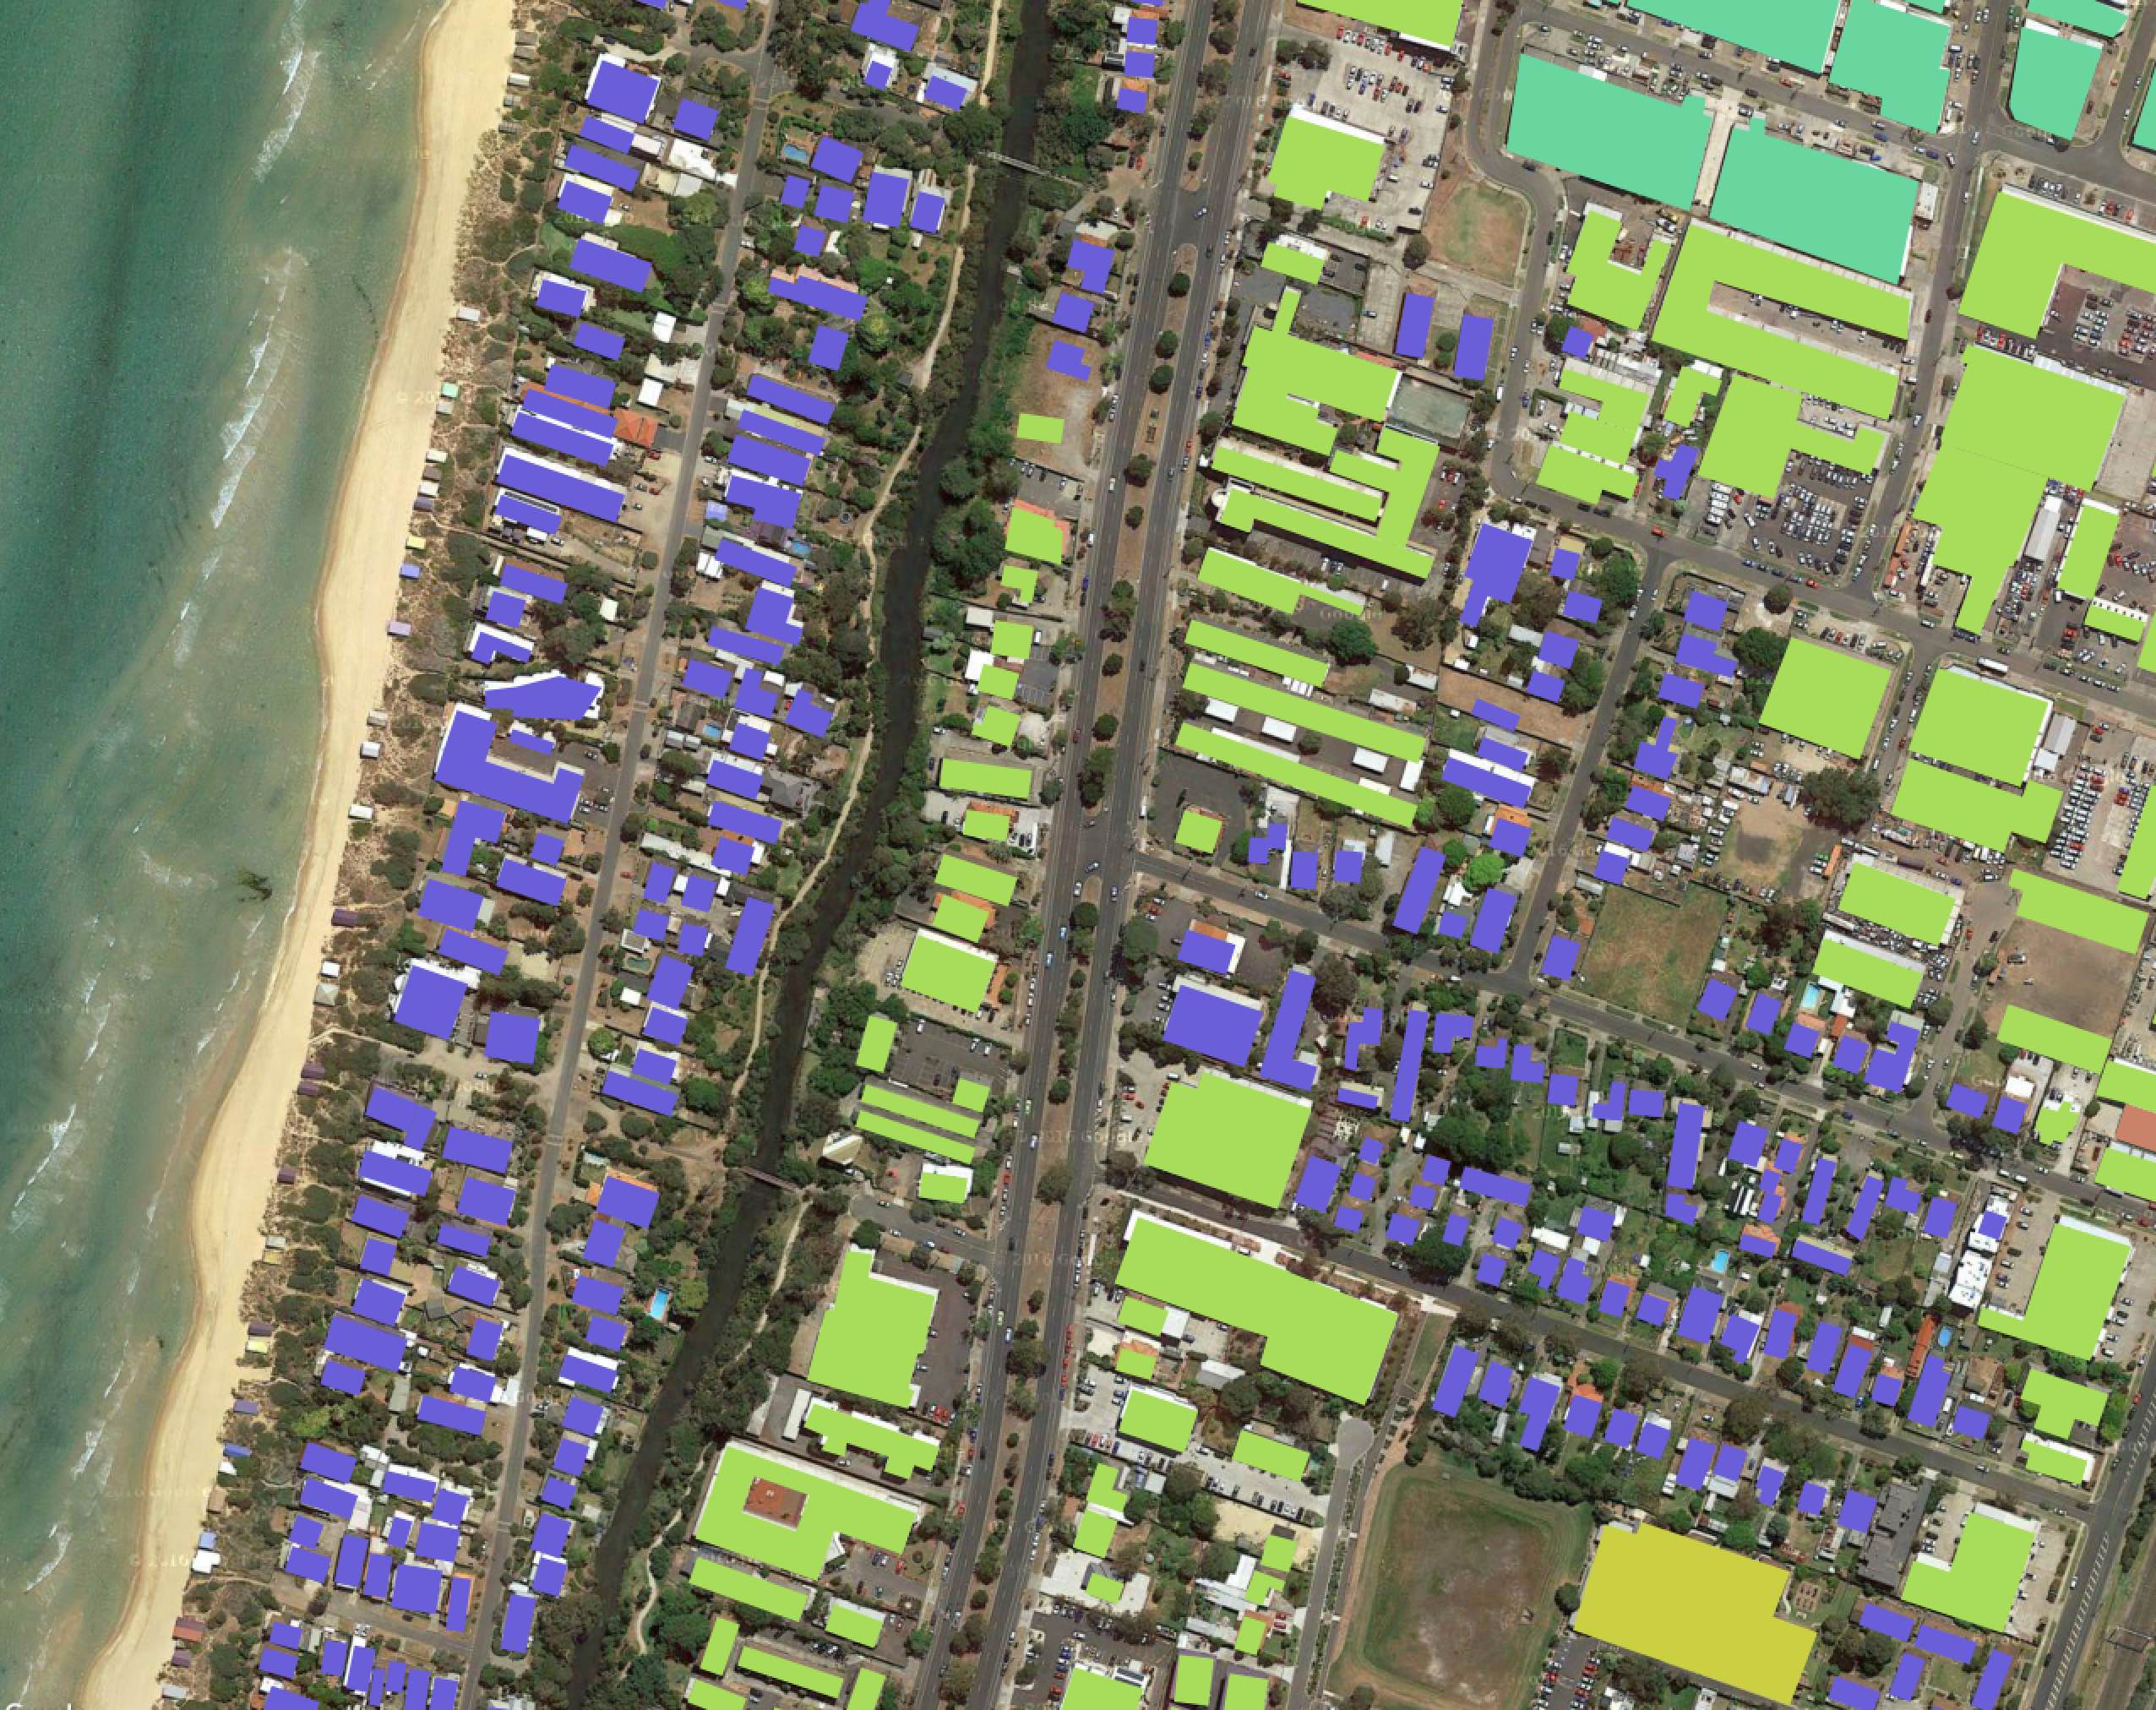 Example of satellite image segmentation page screenshot 1